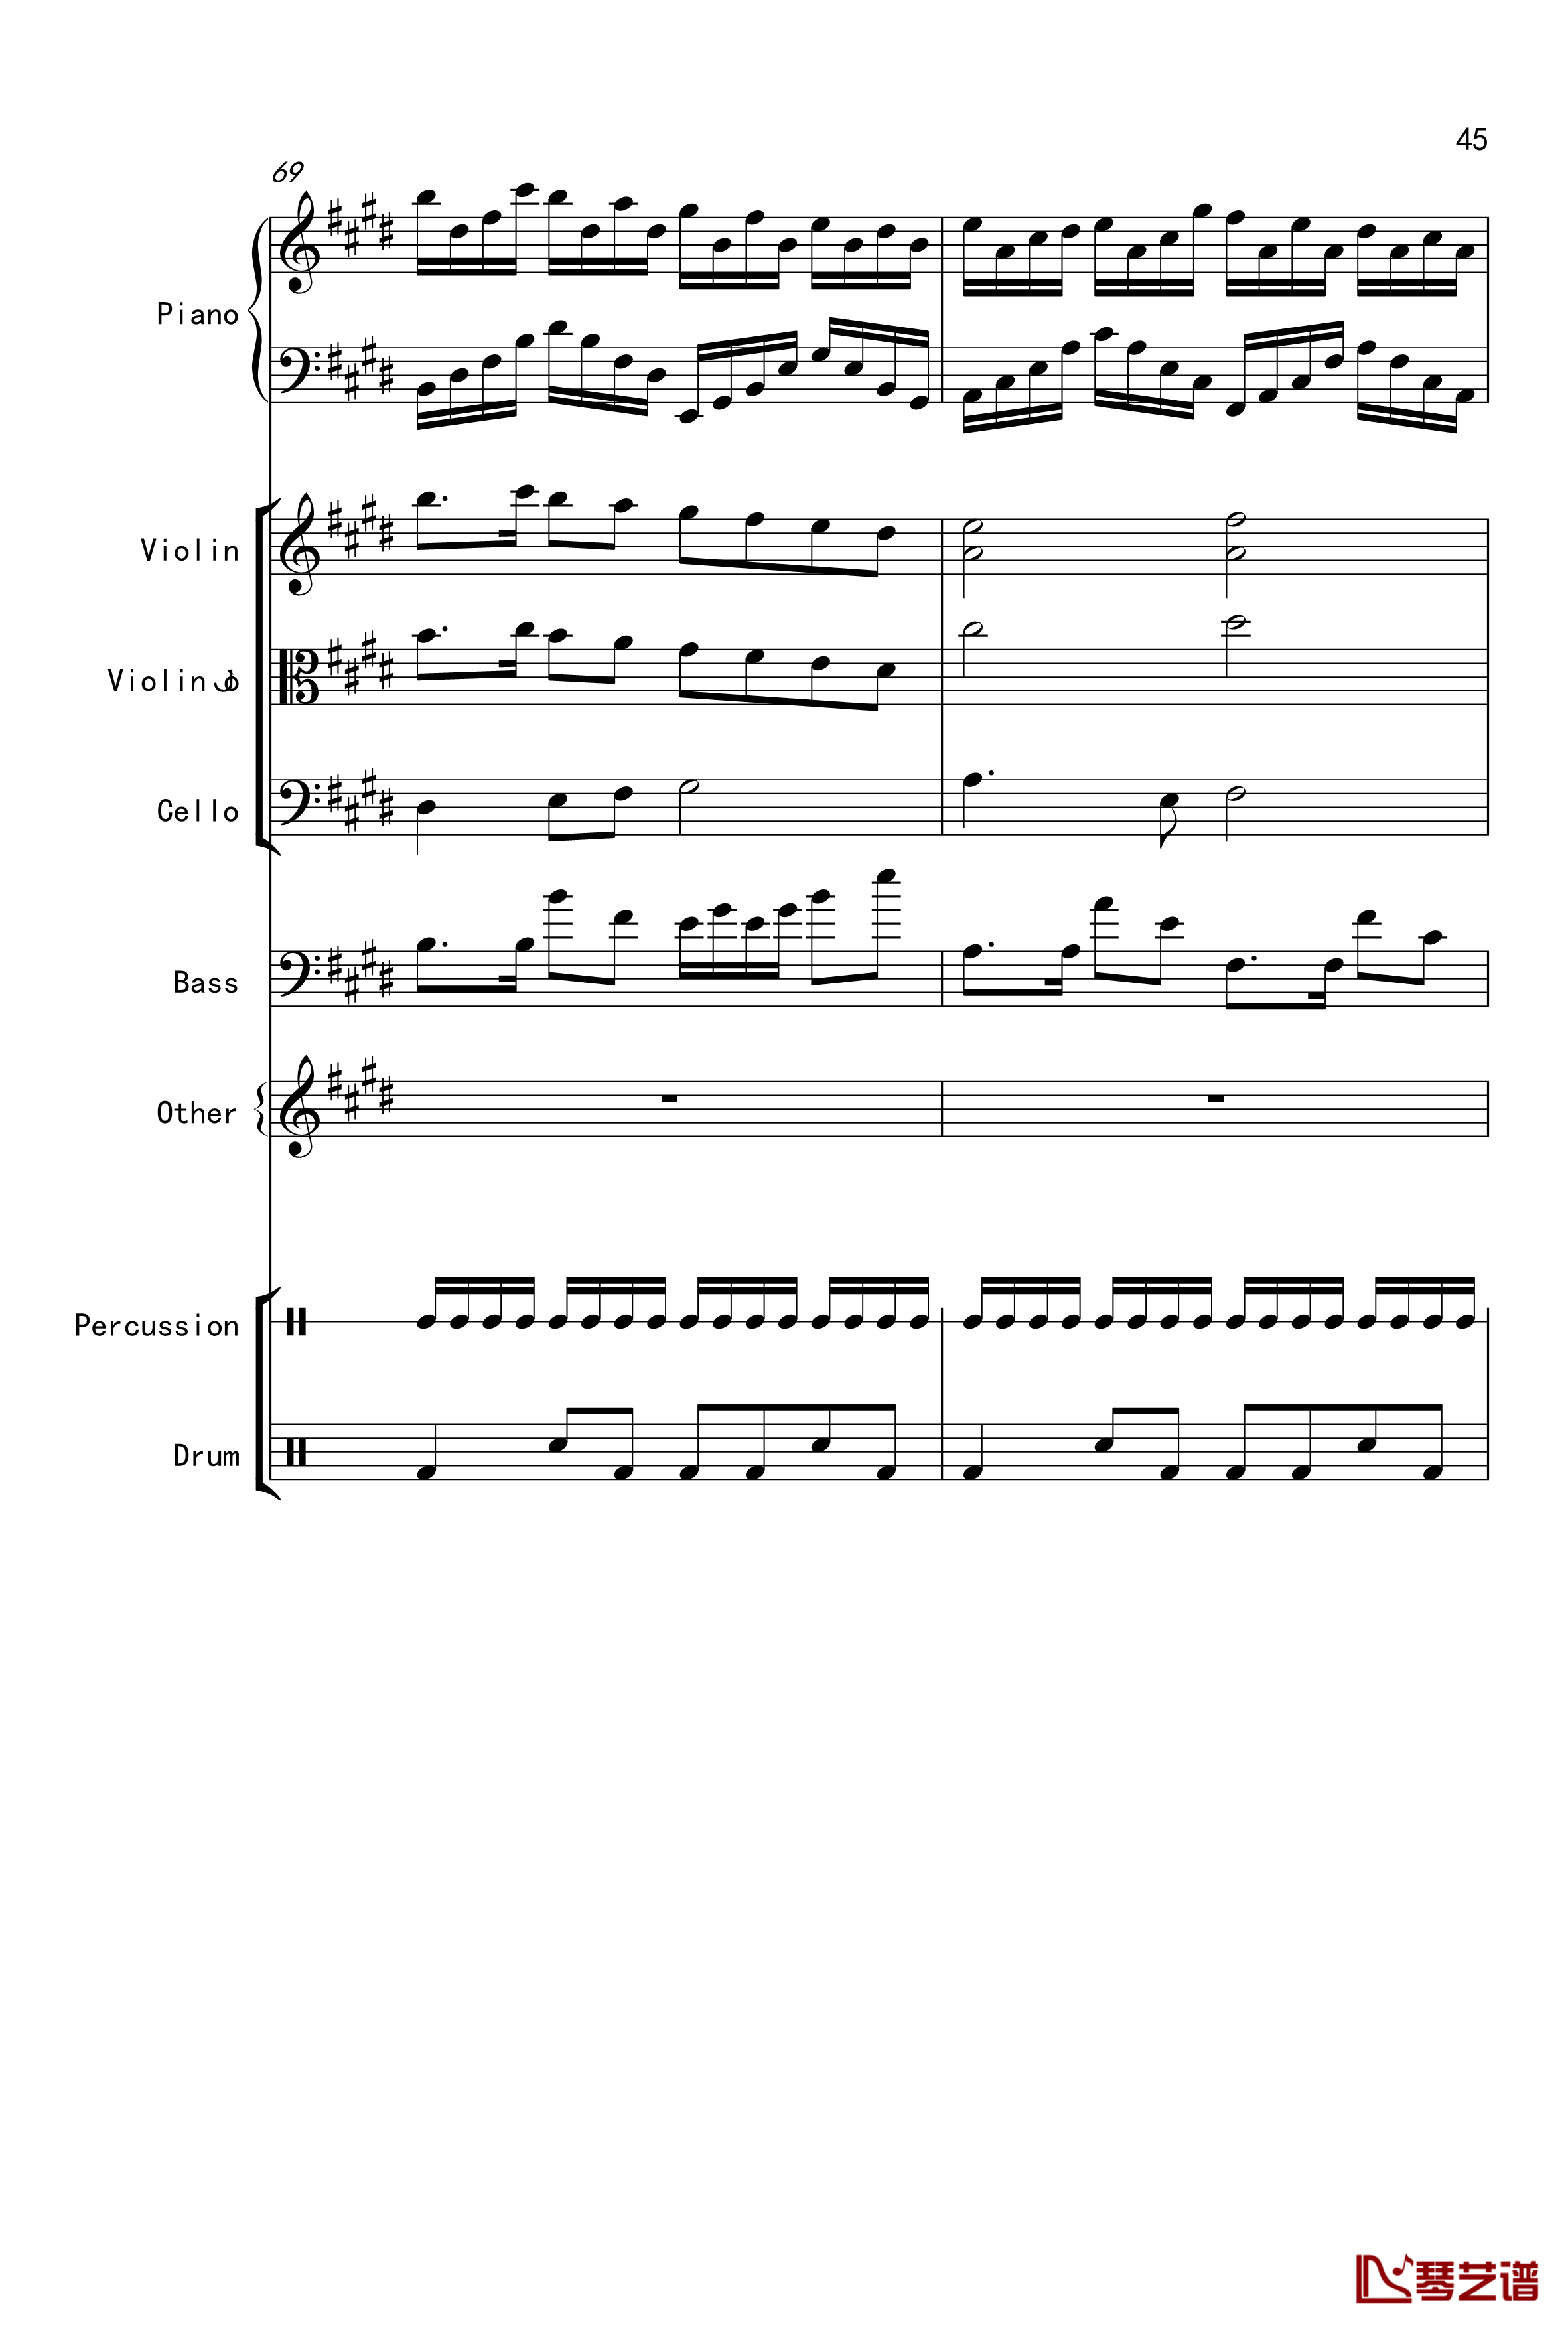 克罗地亚舞曲钢琴谱-Croatian Rhapsody-马克西姆-Maksim·Mrvica45